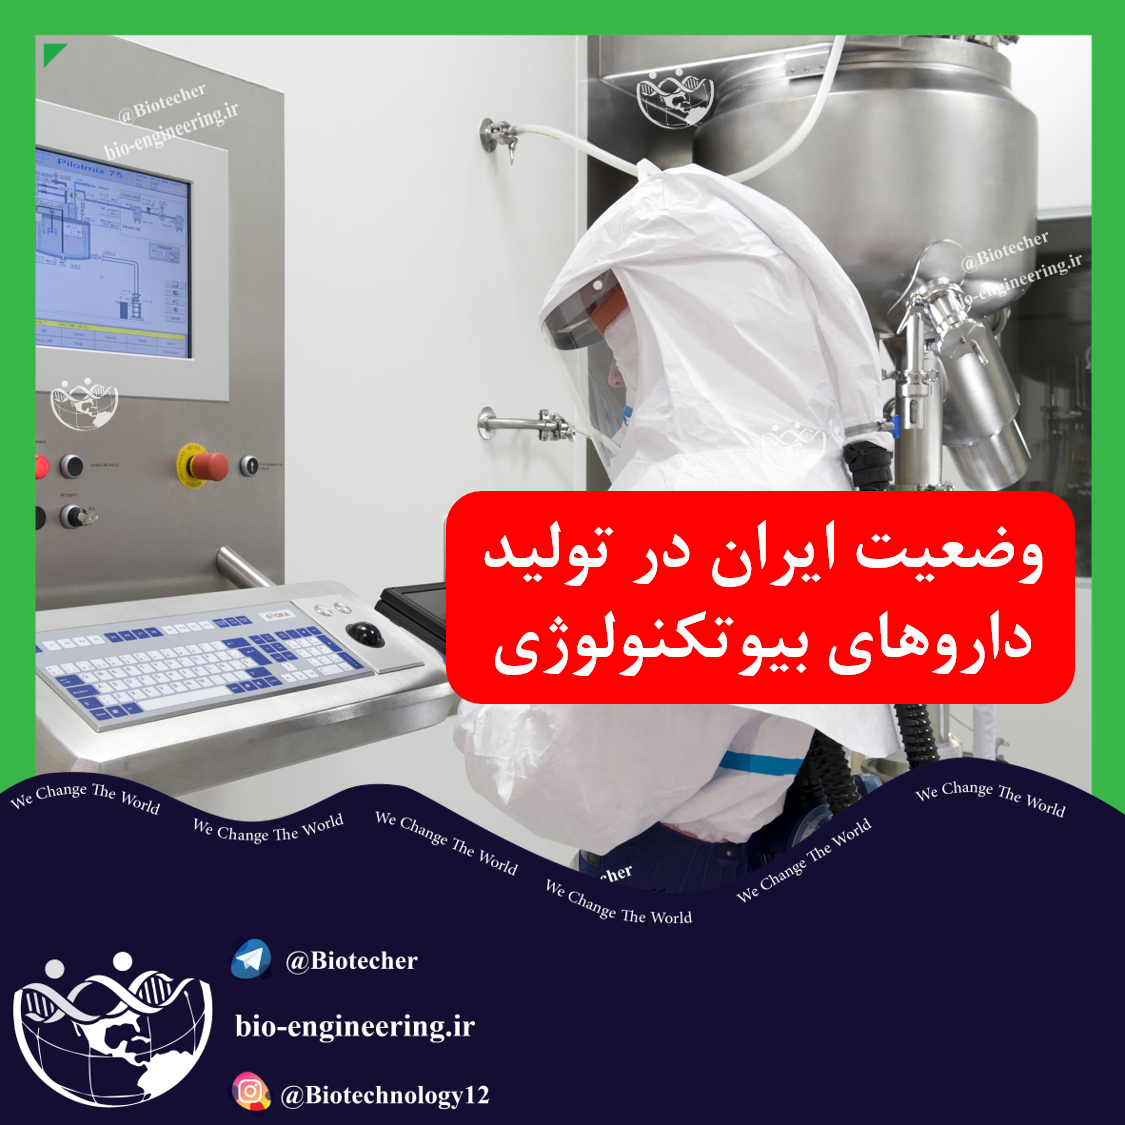 وضعیت ایران در تولید داروهای زیست فناوری